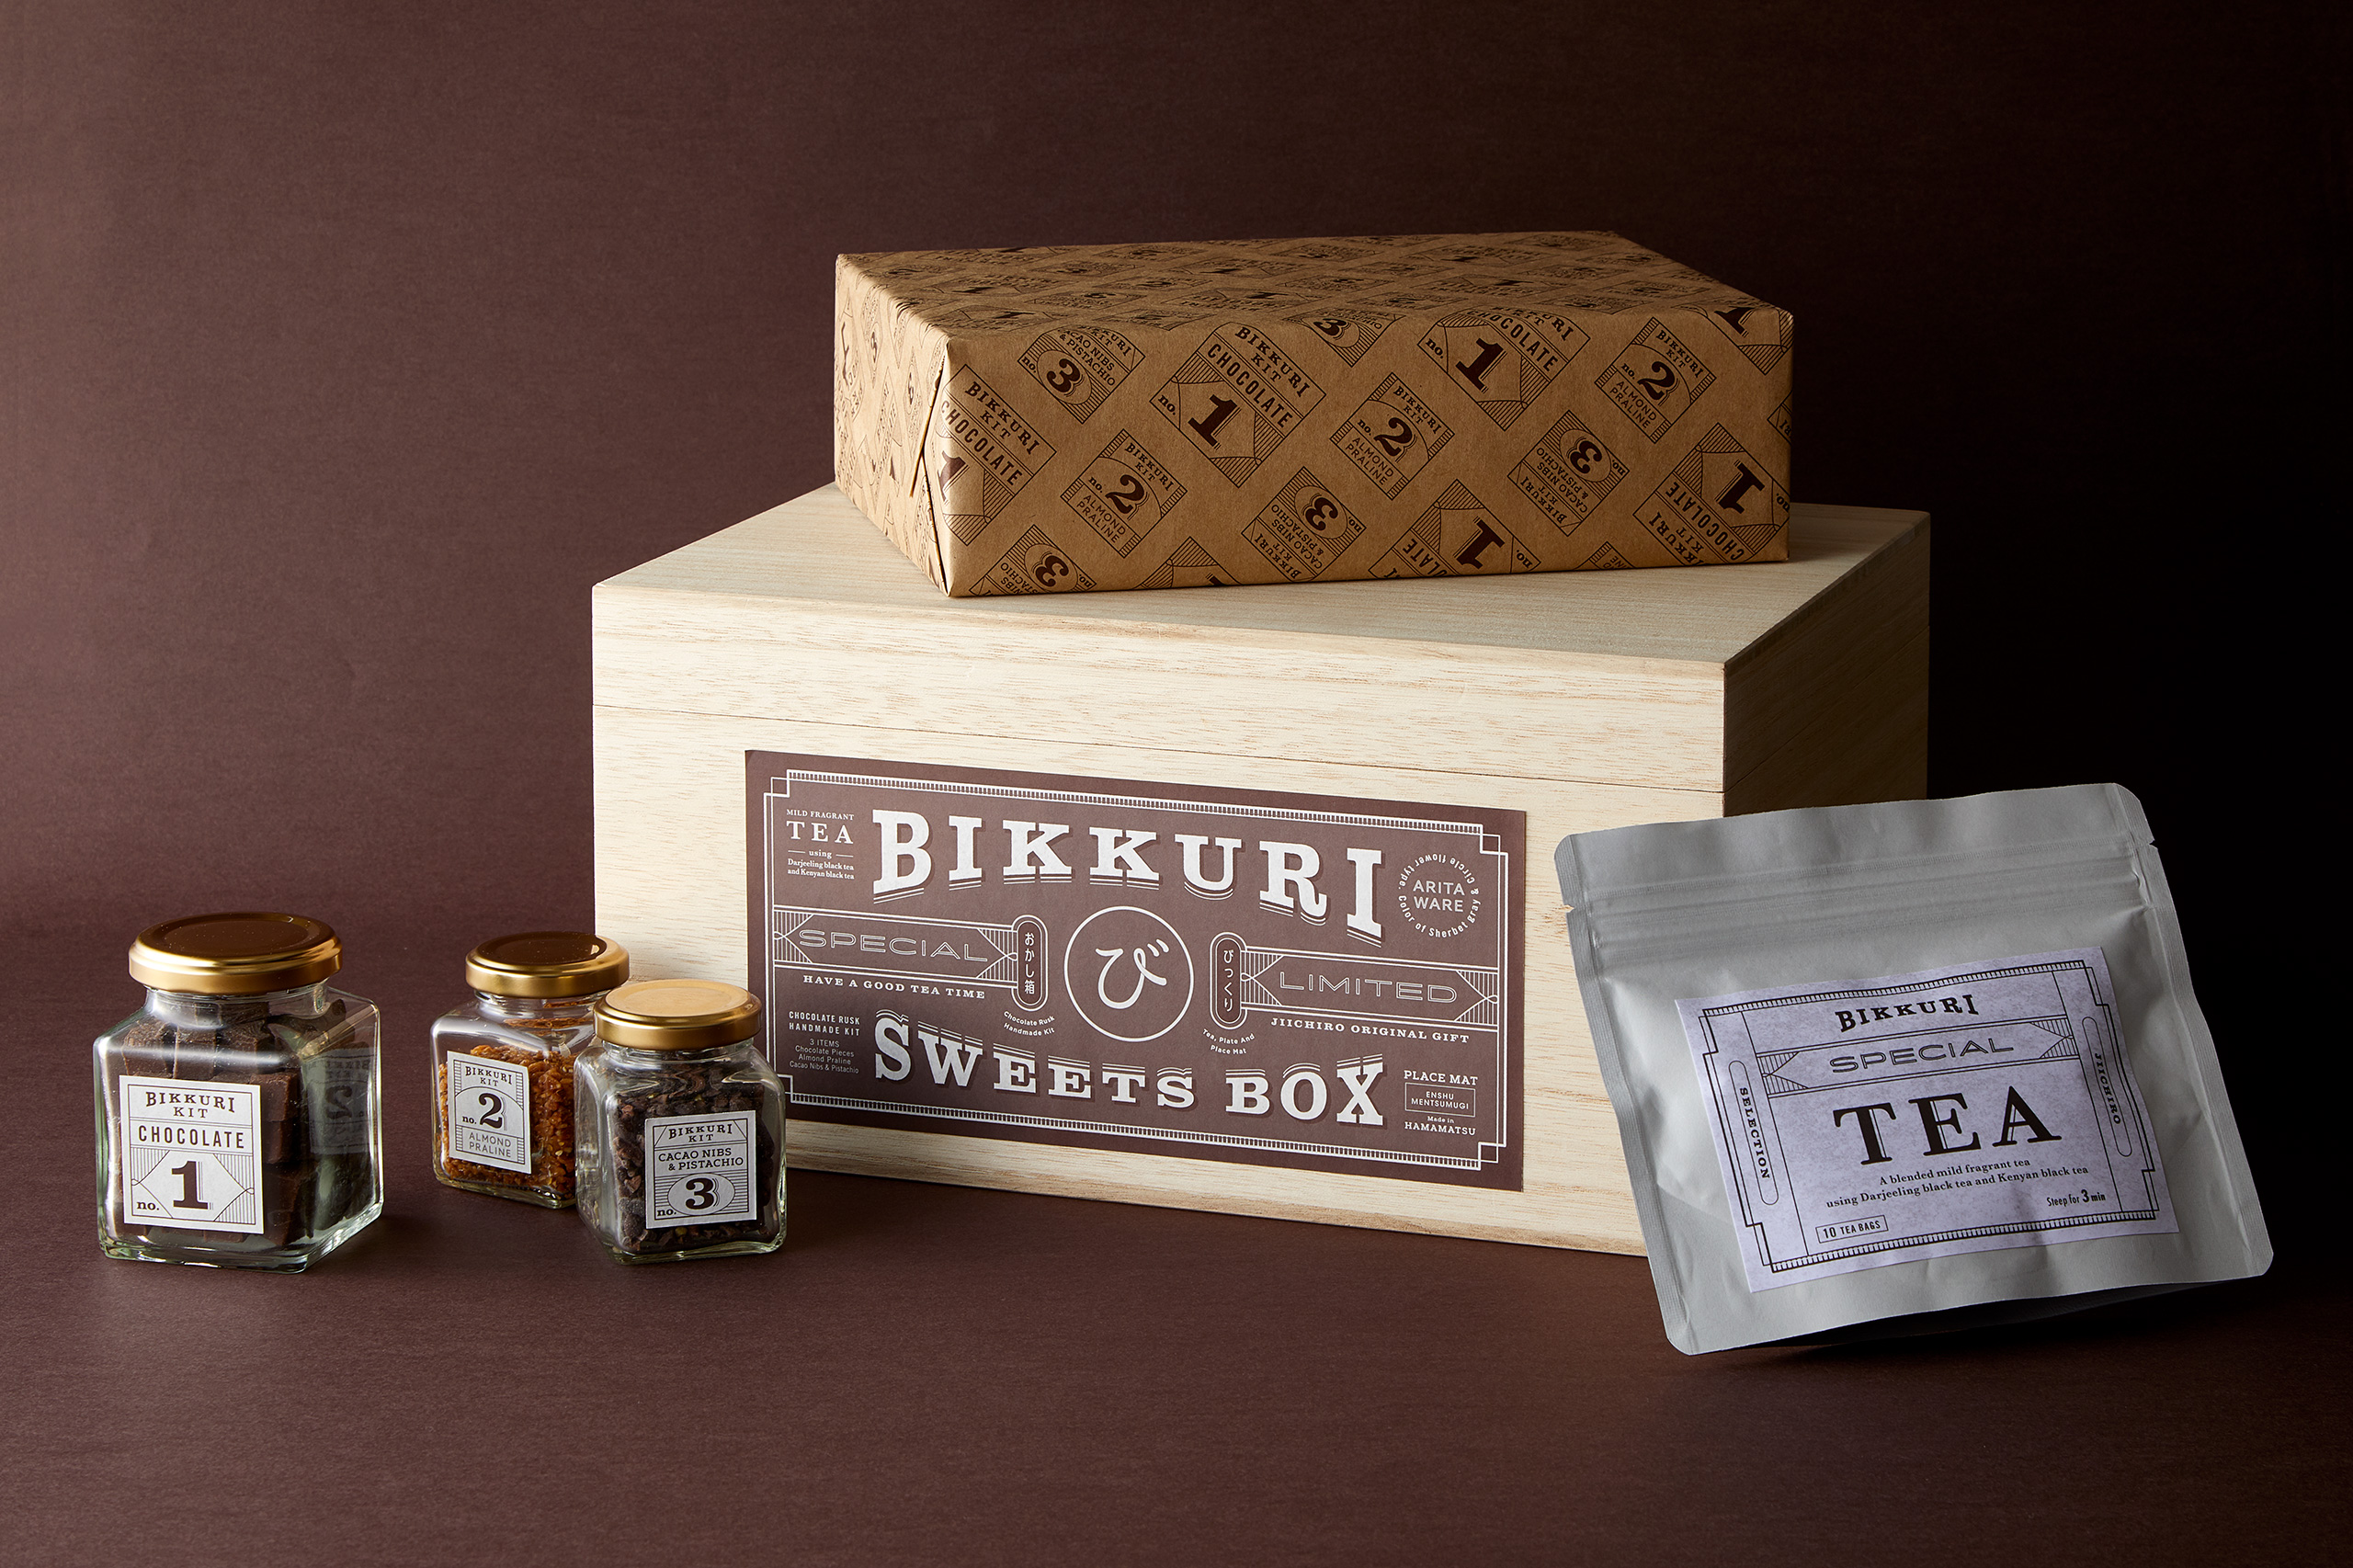 package Jiichiro Bikkuri Sweet Box 2019